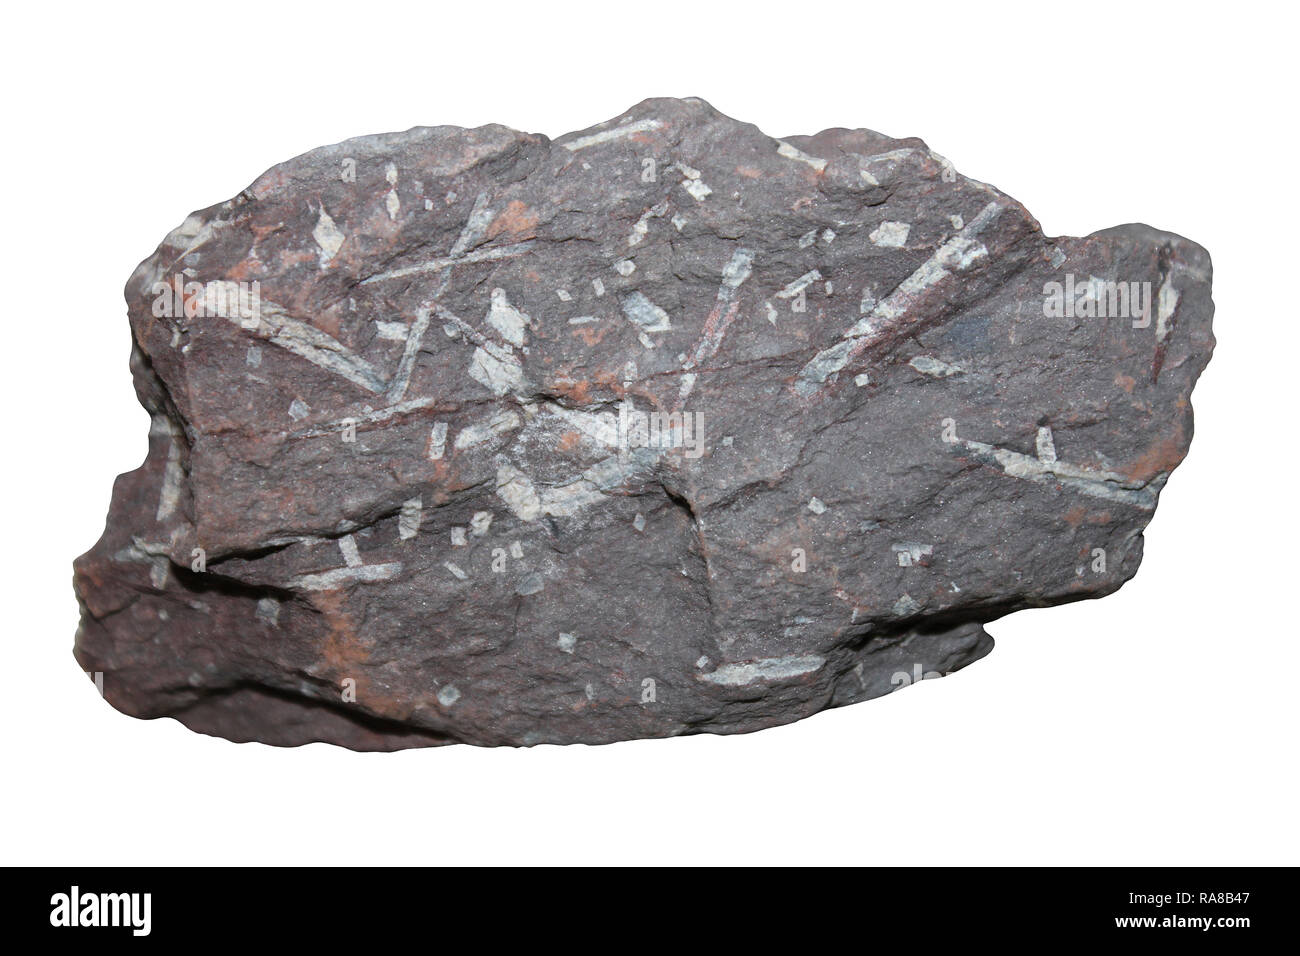 Chiastolite Hornfel Rock (andalusit Schiefer-metamorphes Gestein, durch porphyroblasts von chiastolite und cordierit in einer feinkörnigen Matrix dominiert) Stockfoto